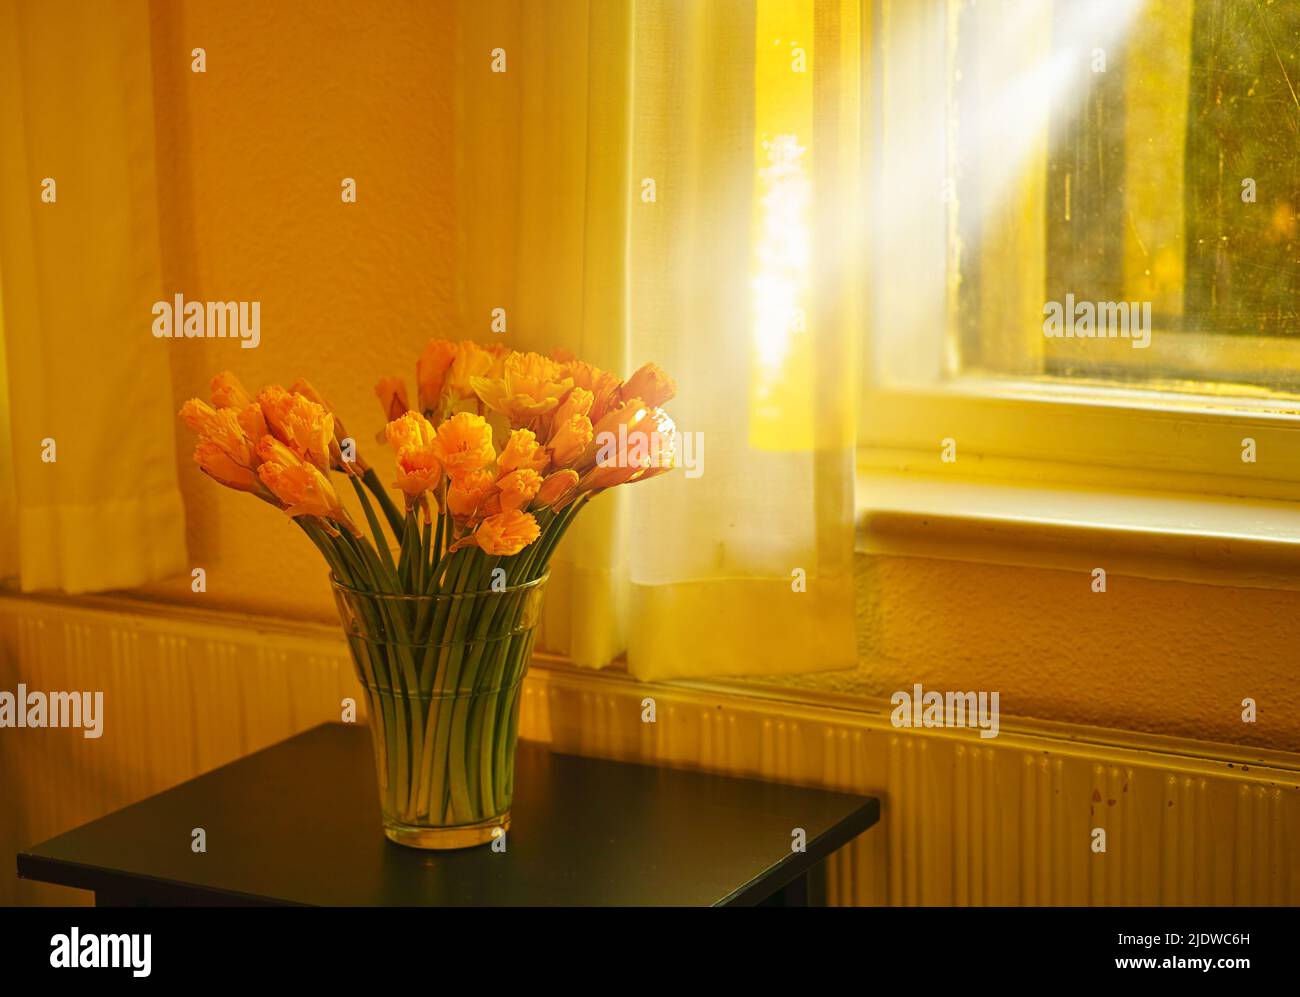 Hermoso ramo de flores frescas de tulipanes en una mesa en casa vacía. Naranjas frescas de verano flores que simbolizan la esperanza, el amor y el crecimiento. Flores brillantes como Foto de stock